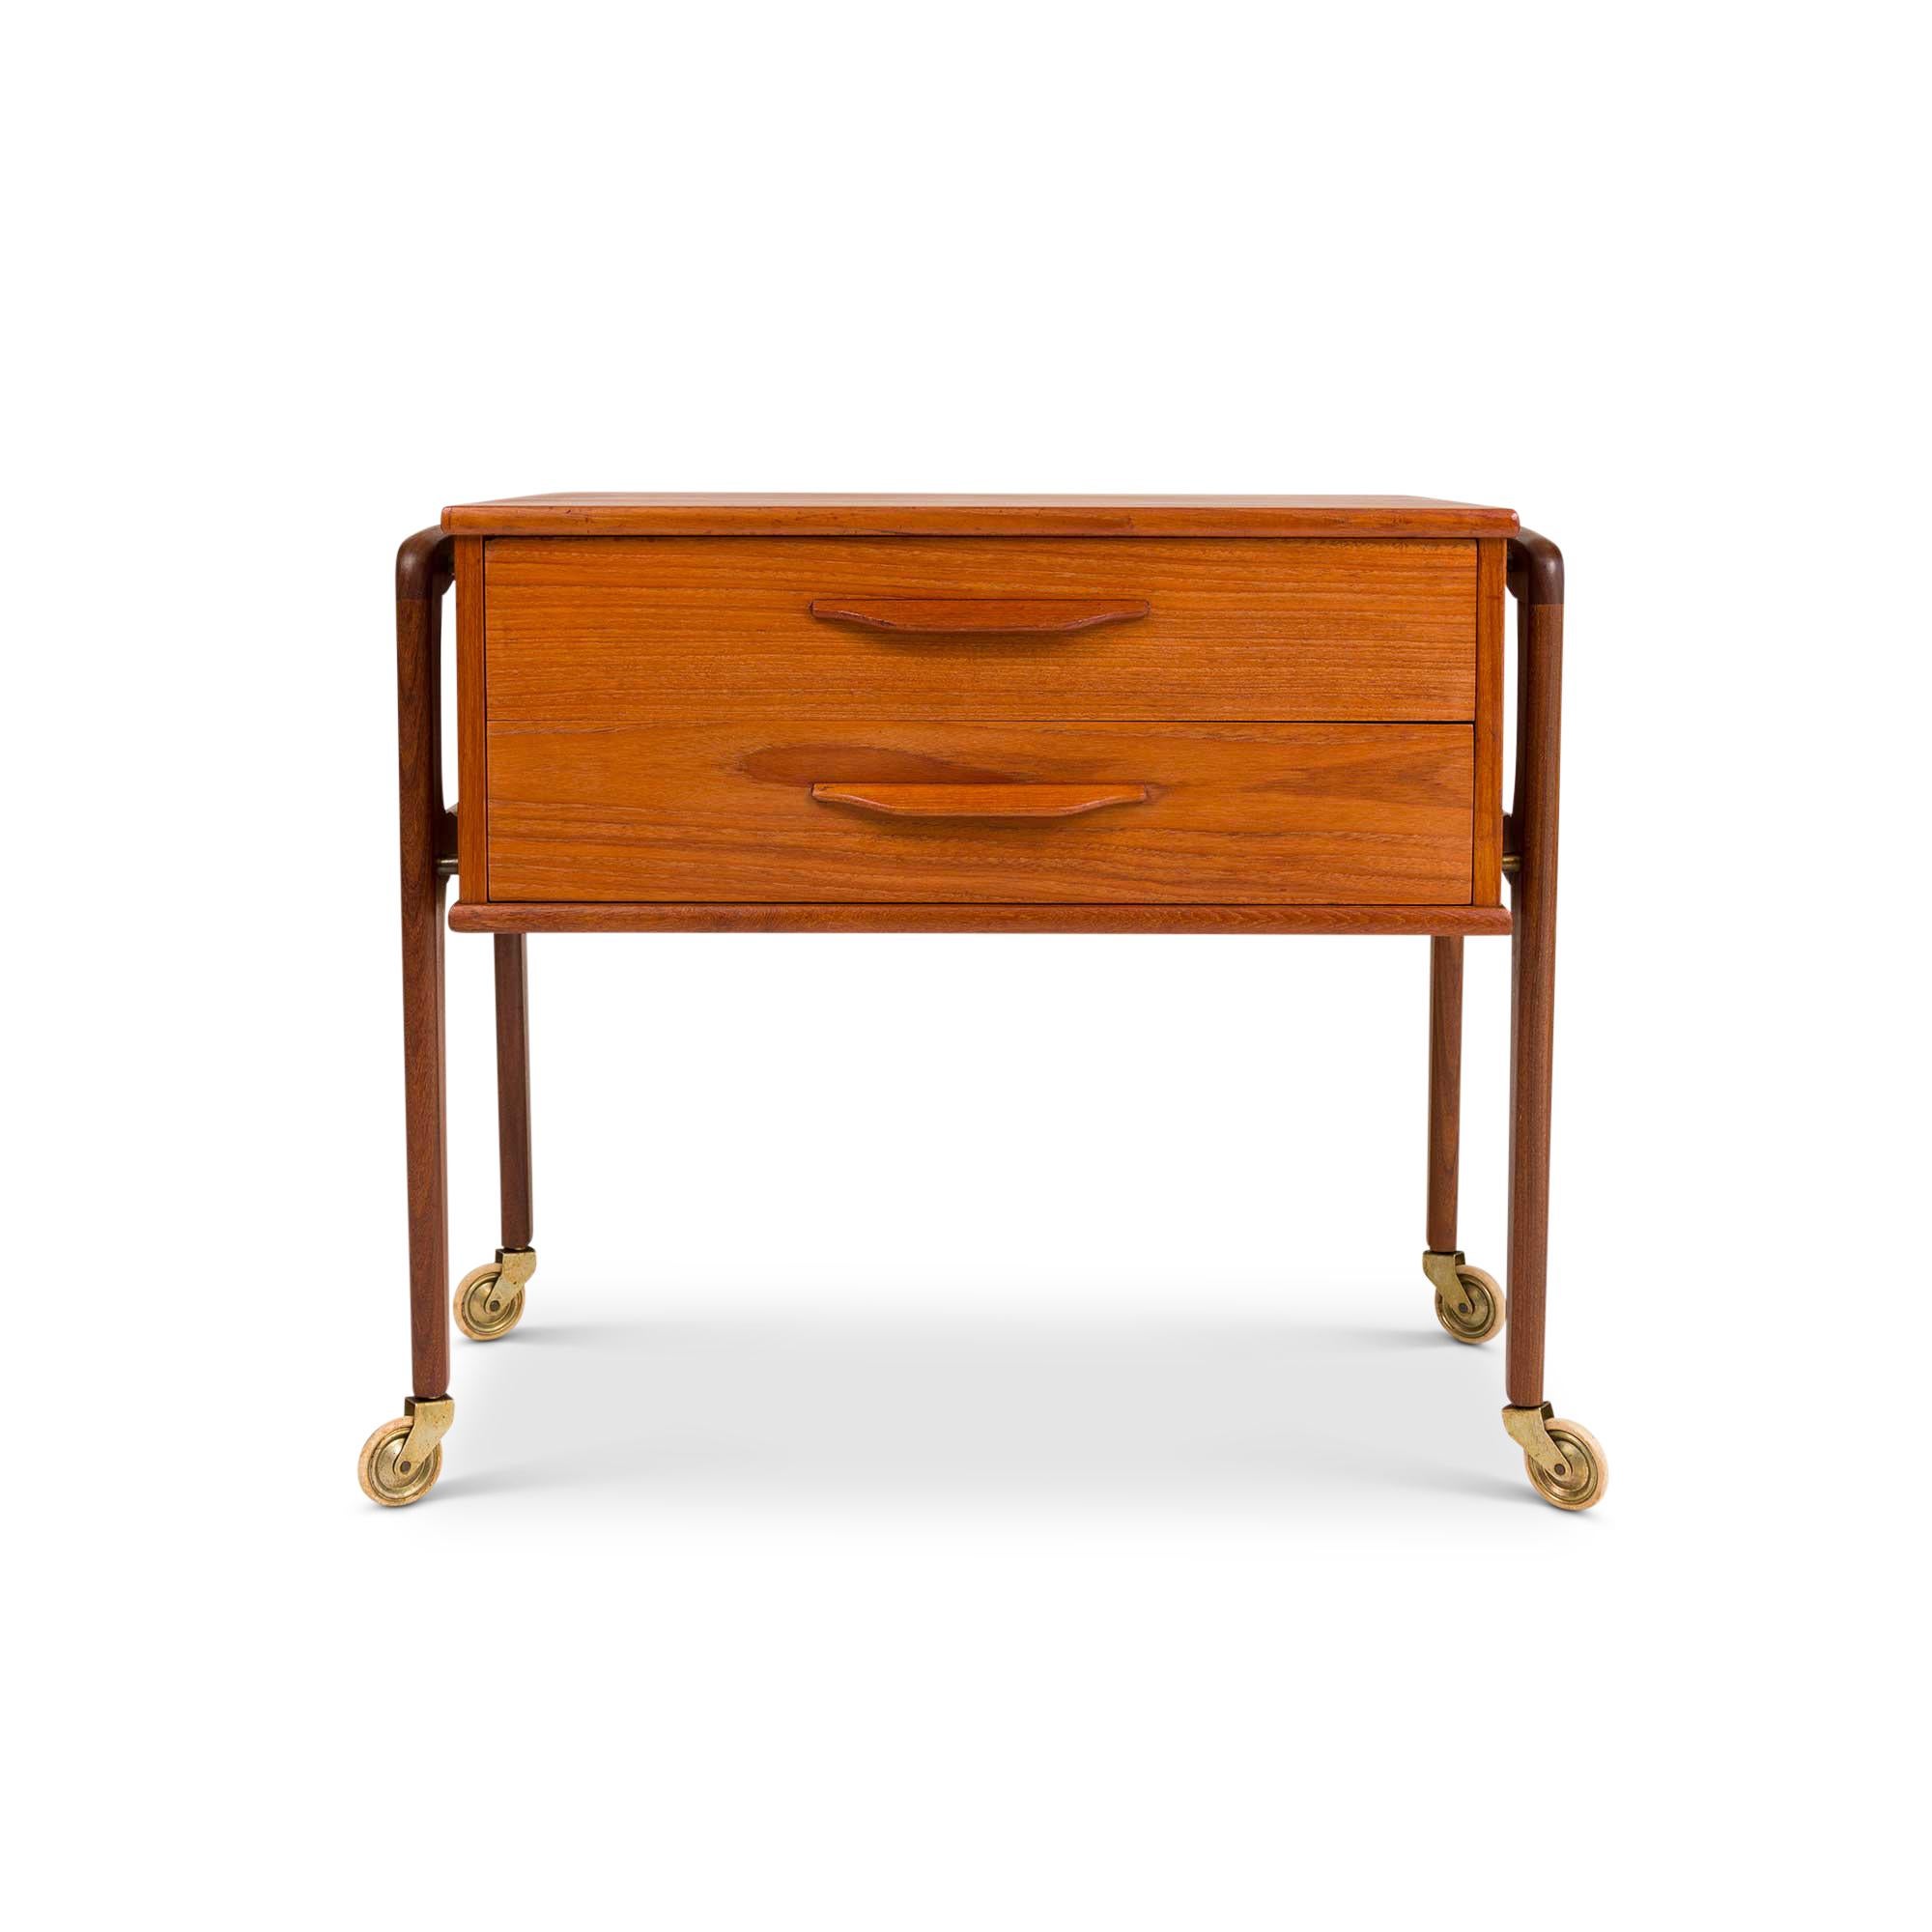 Die dänischen Mid-Century-Möbel verkörpern mit ihrer zeitlosen Eleganz, Funktionalität und außergewöhnlichen Handwerkskunst die skandinavischen Designprinzipien. Die in den 1950er und 1960er Jahren aufblühende Kunst spiegelt die Sensibilität der